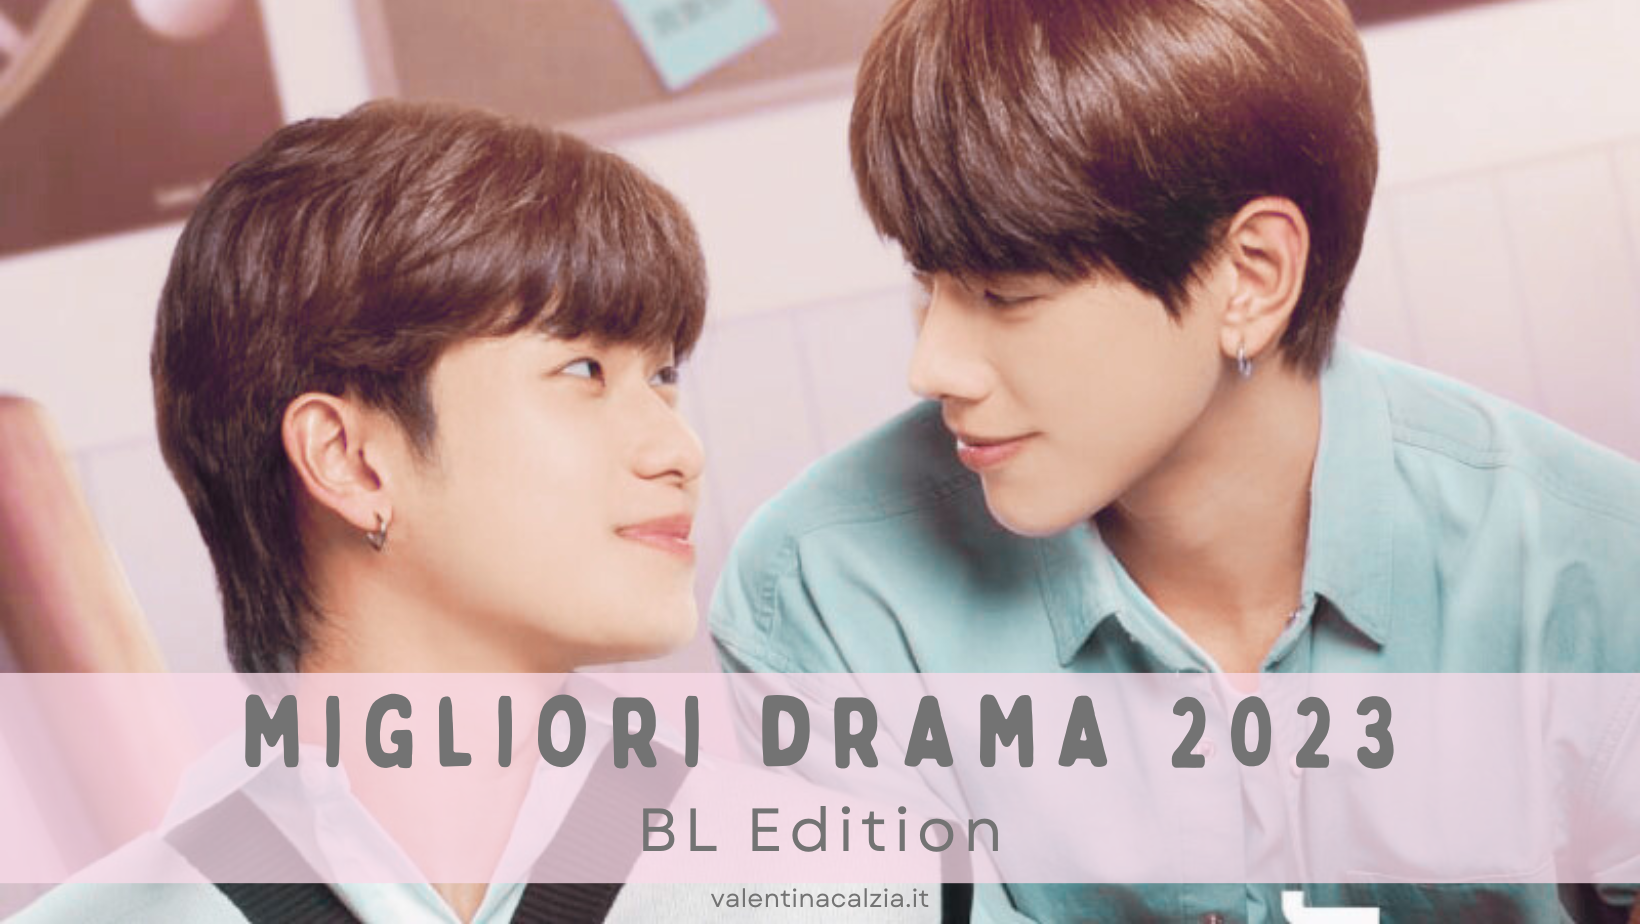 Migliori drama 2023 BL boys love